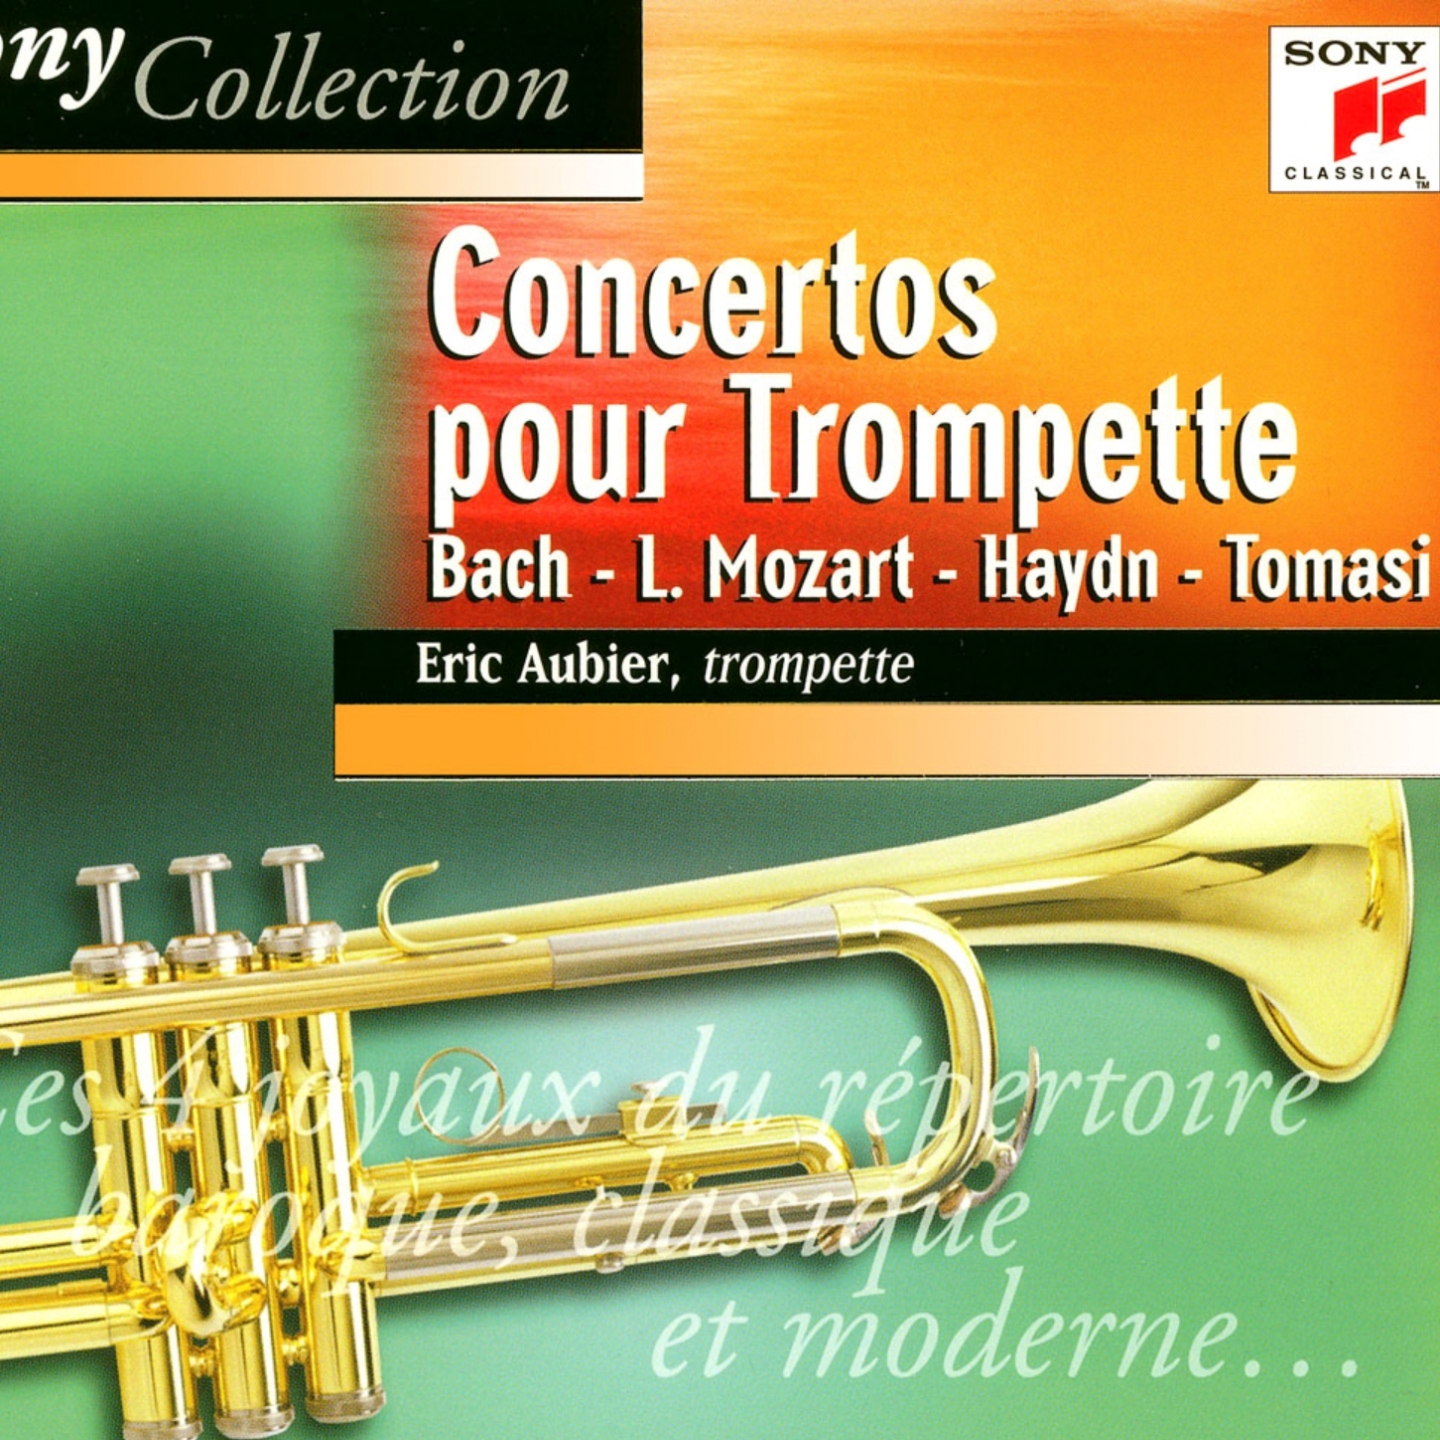 Concerto pour trompette en Re majeur Allegro moderato